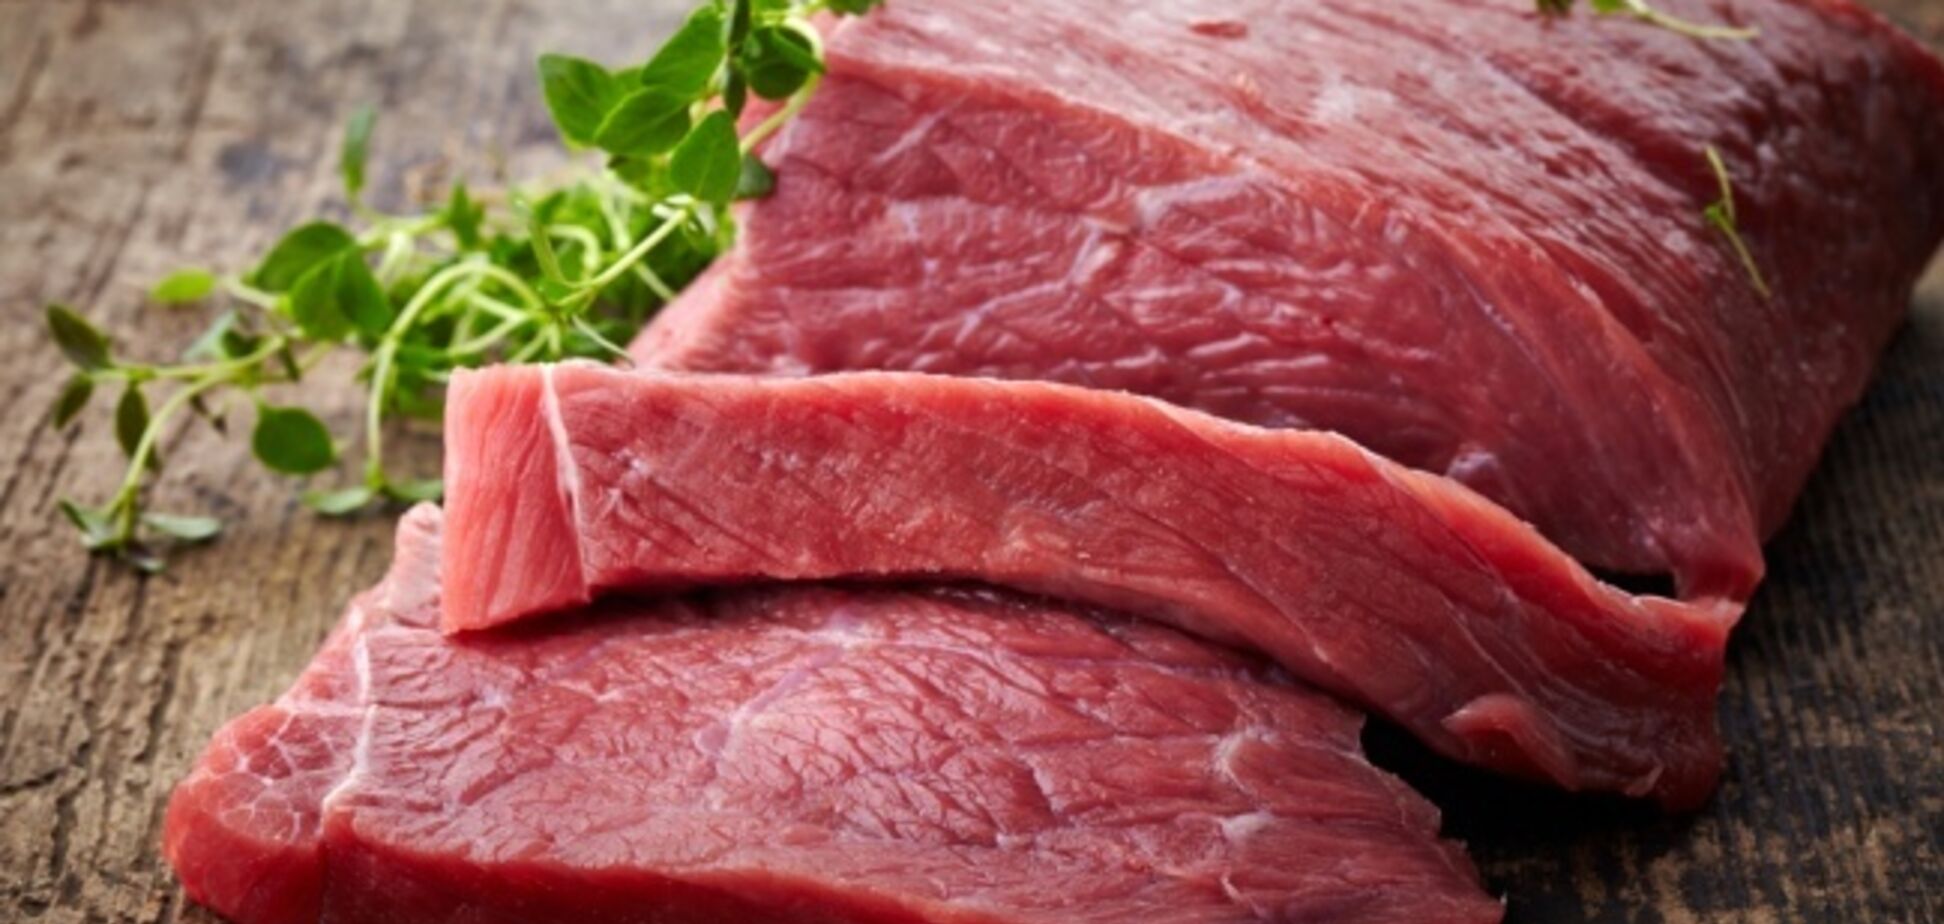  Убивает раньше времени: выяснилась неожиданная опасность мяса